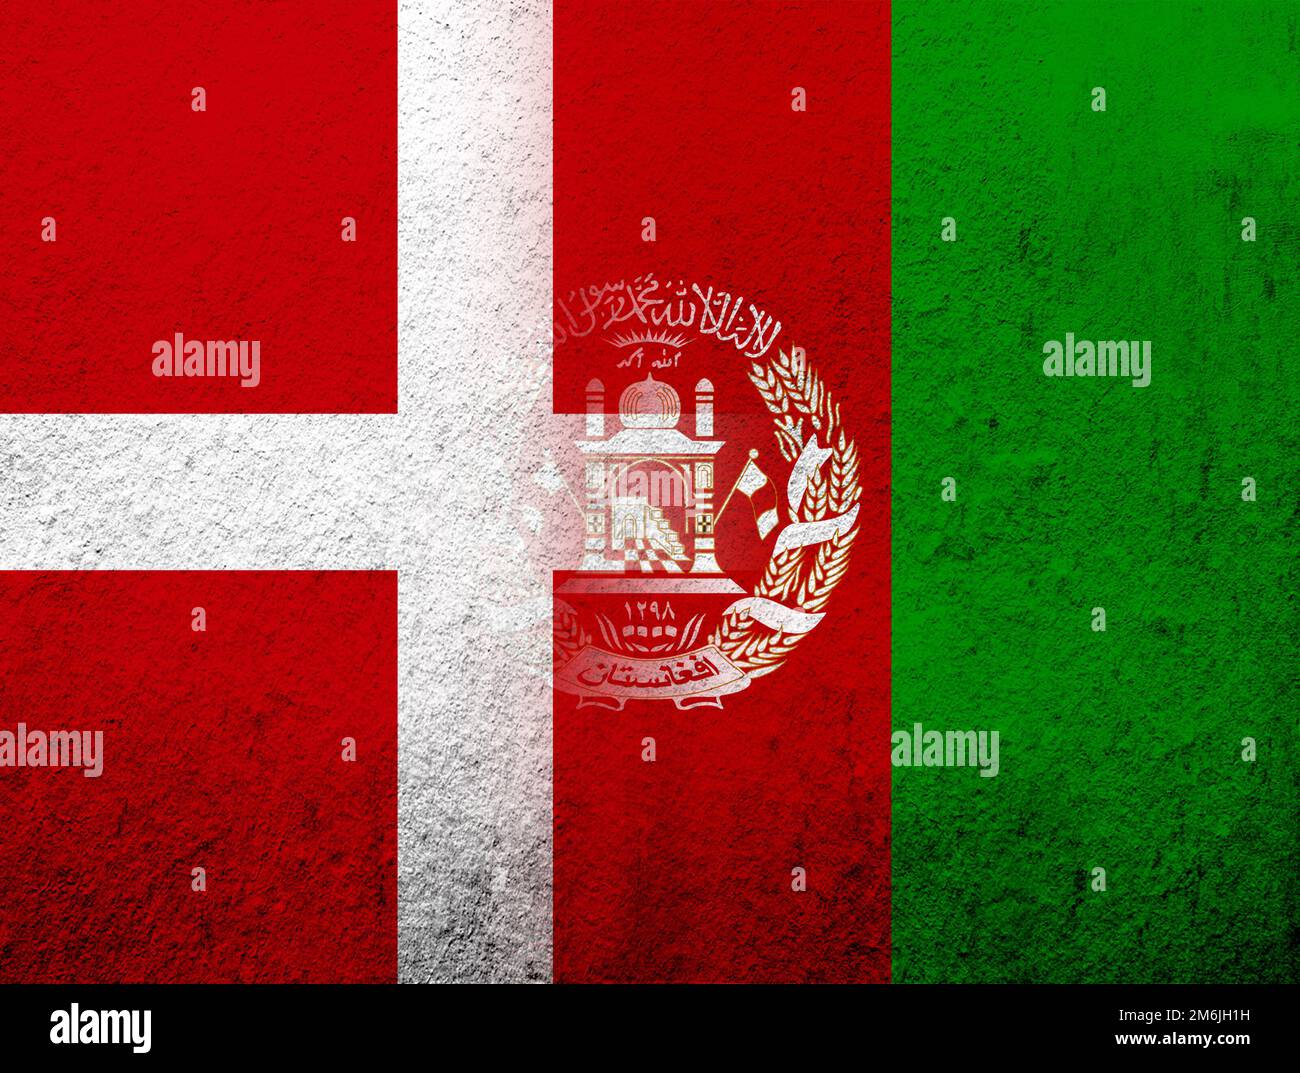 Le Royaume du Danemark drapeau national avec drapeau national de la République islamique d'Afghanistan. Grunge l'arrière-plan Banque D'Images